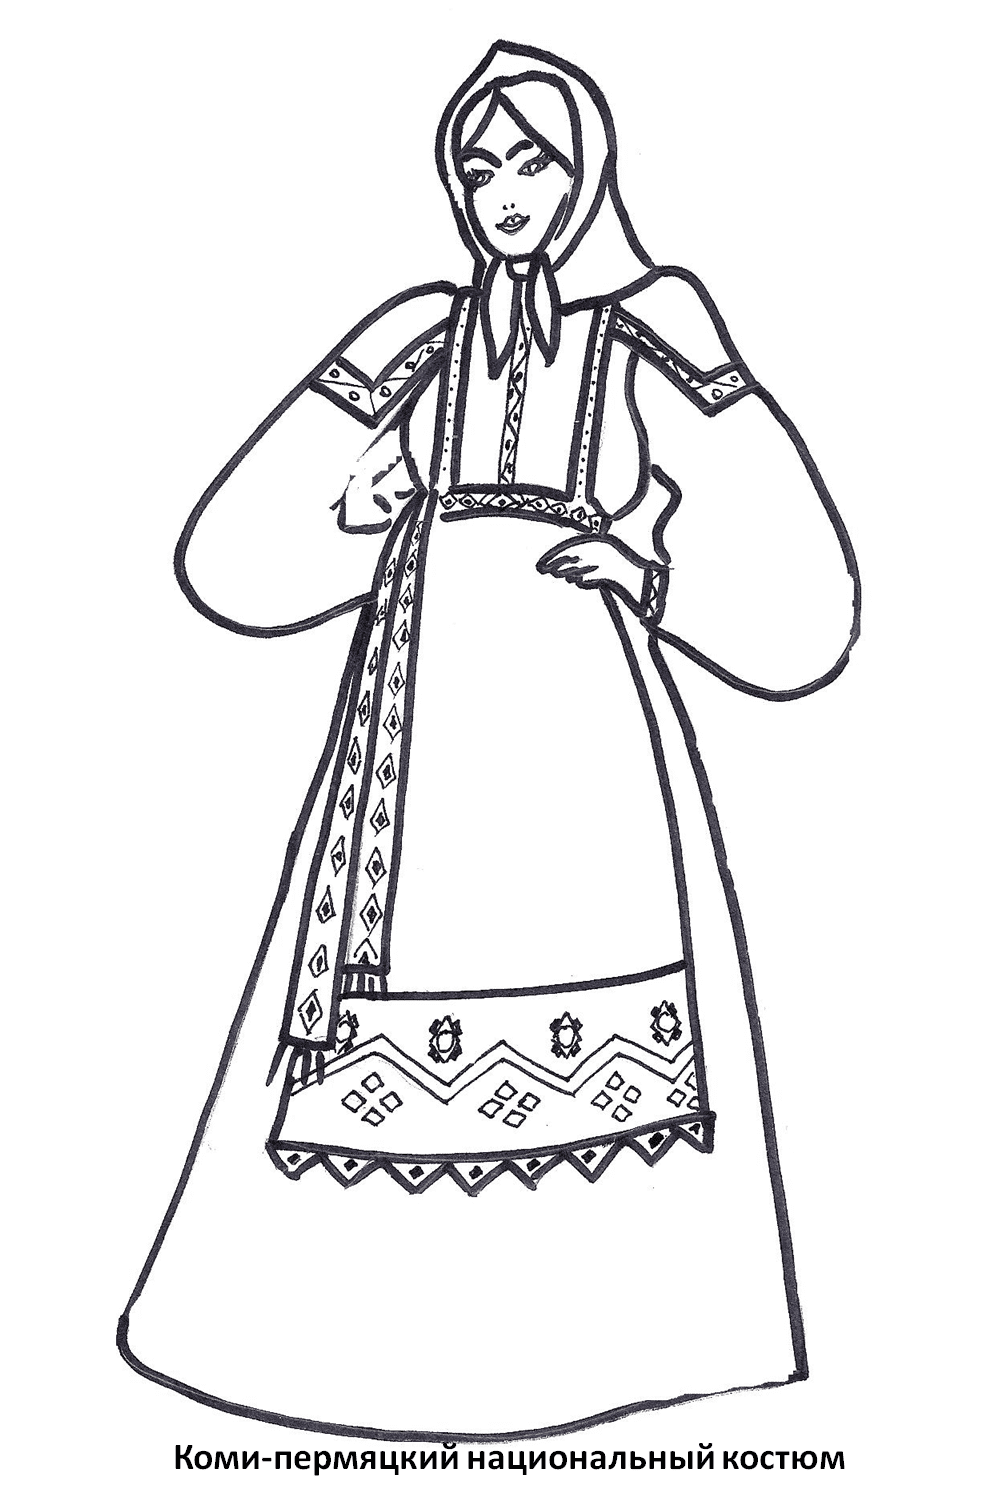 Комо-пермяцкий женский национальный костюм